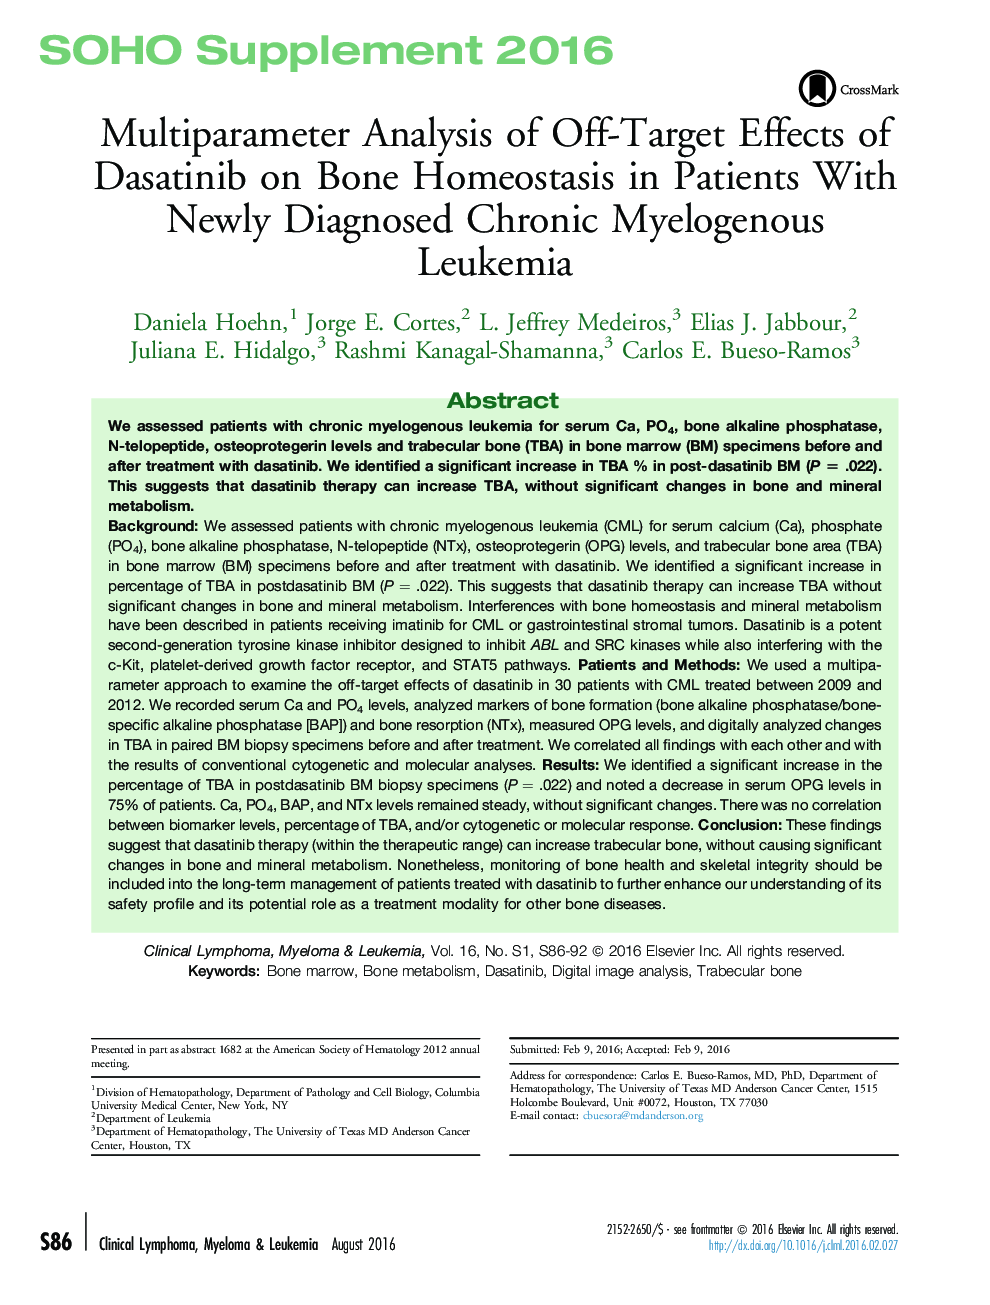 تحلیل چند پارامتری از اهداف غیرقطعی داستاتینیب بر هوموستاز استخوان در بیماران مبتلا به لوسمی مزمن ماهی 